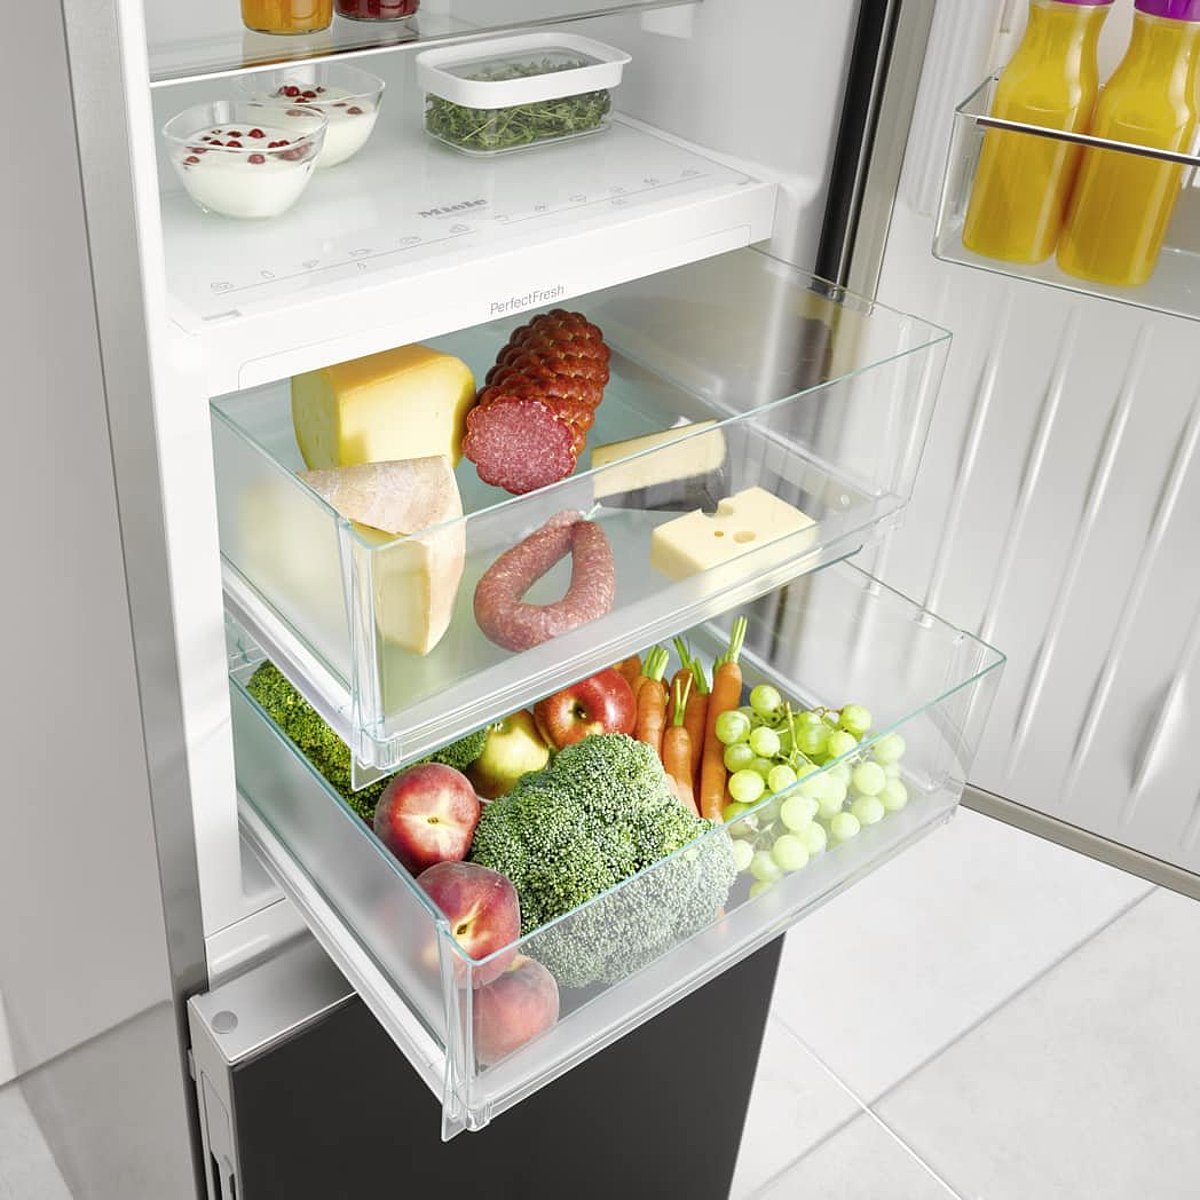 Kühlschrank gefüllt mit Lebensmitteln und geöffneten Schublade